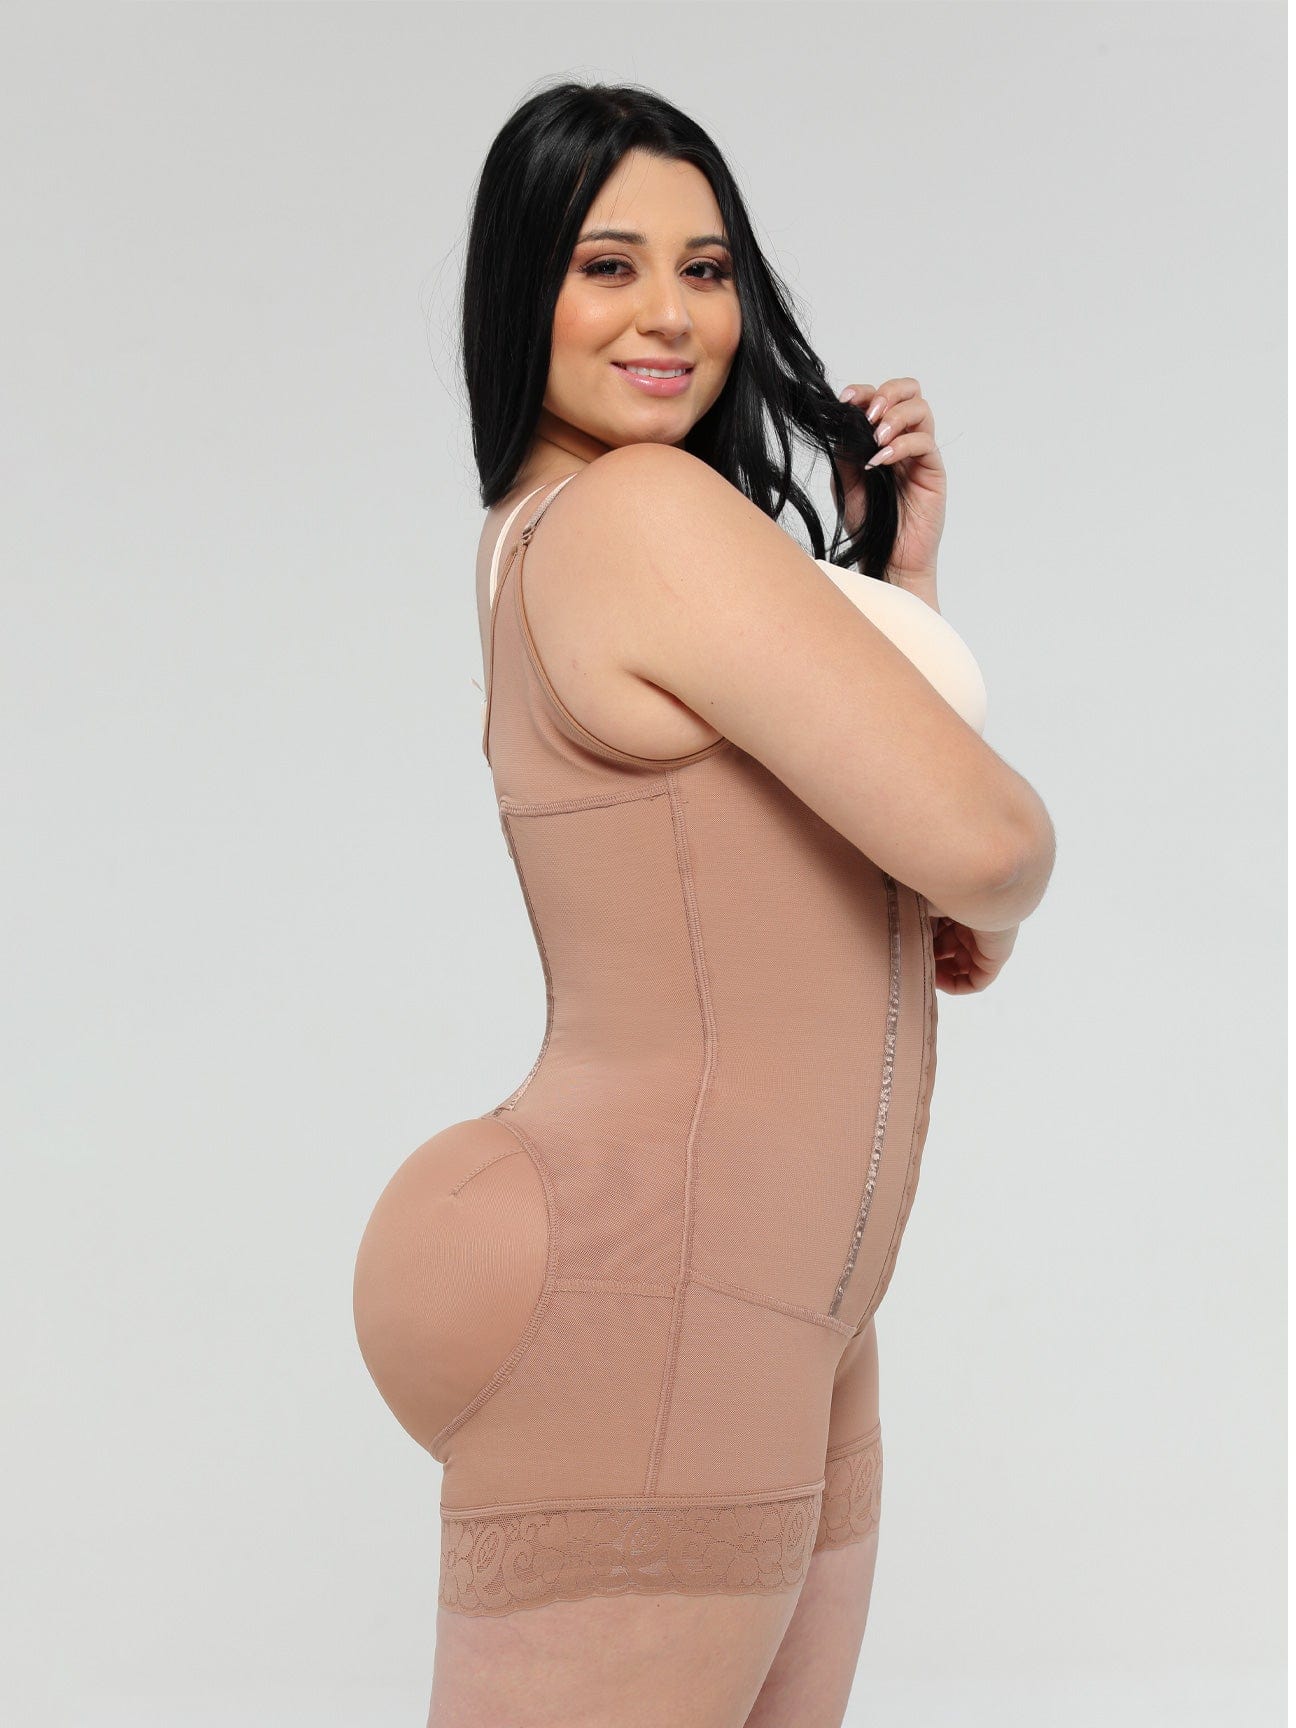 Women Waist Trainer Butt Pads Seamless Hip Enhancer Slimming Shorts Skims  Kim Kardashian Bbl Post Op Surgery Suppliescon size L Color Auburn